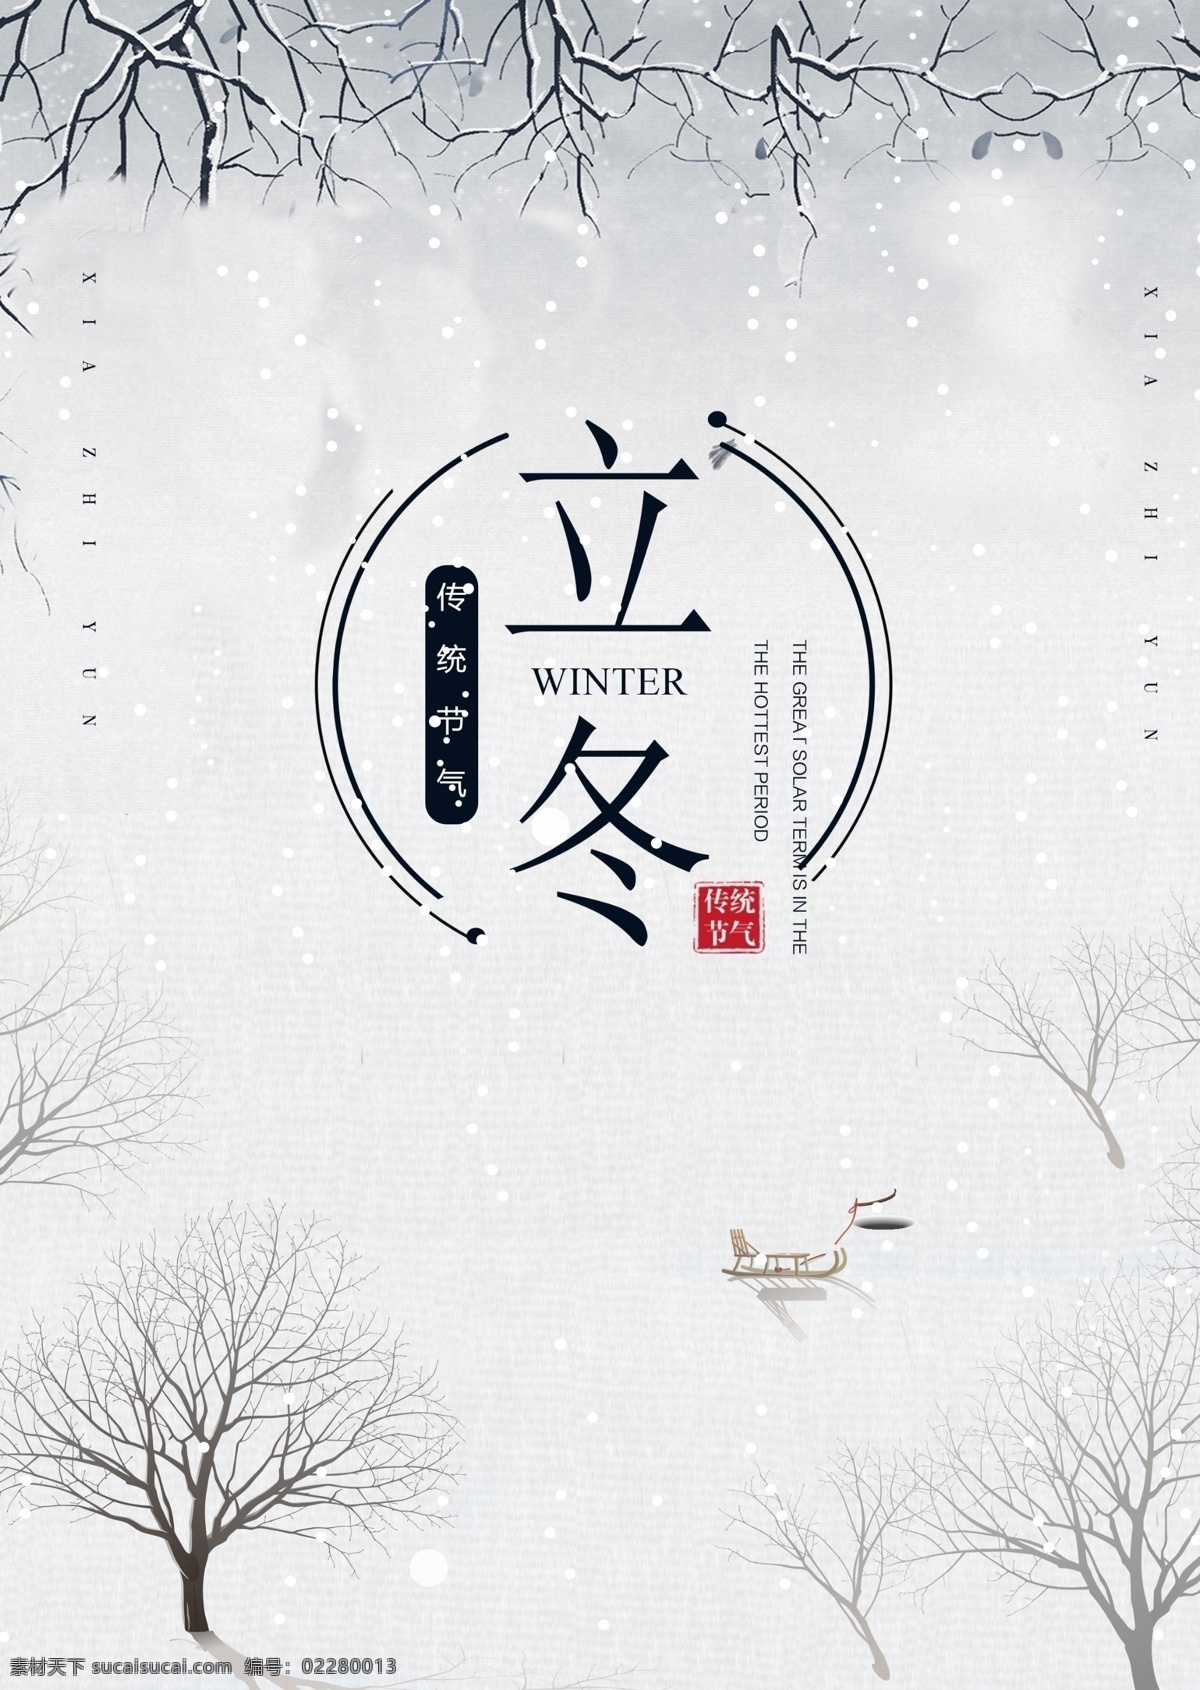 白色 简单 墨水 树 雪 风景 冬天 海报 古典 极简主义 墨 冬季 朝鲜的 中文 英语 美丽 灰色 新年 松树 分支机构